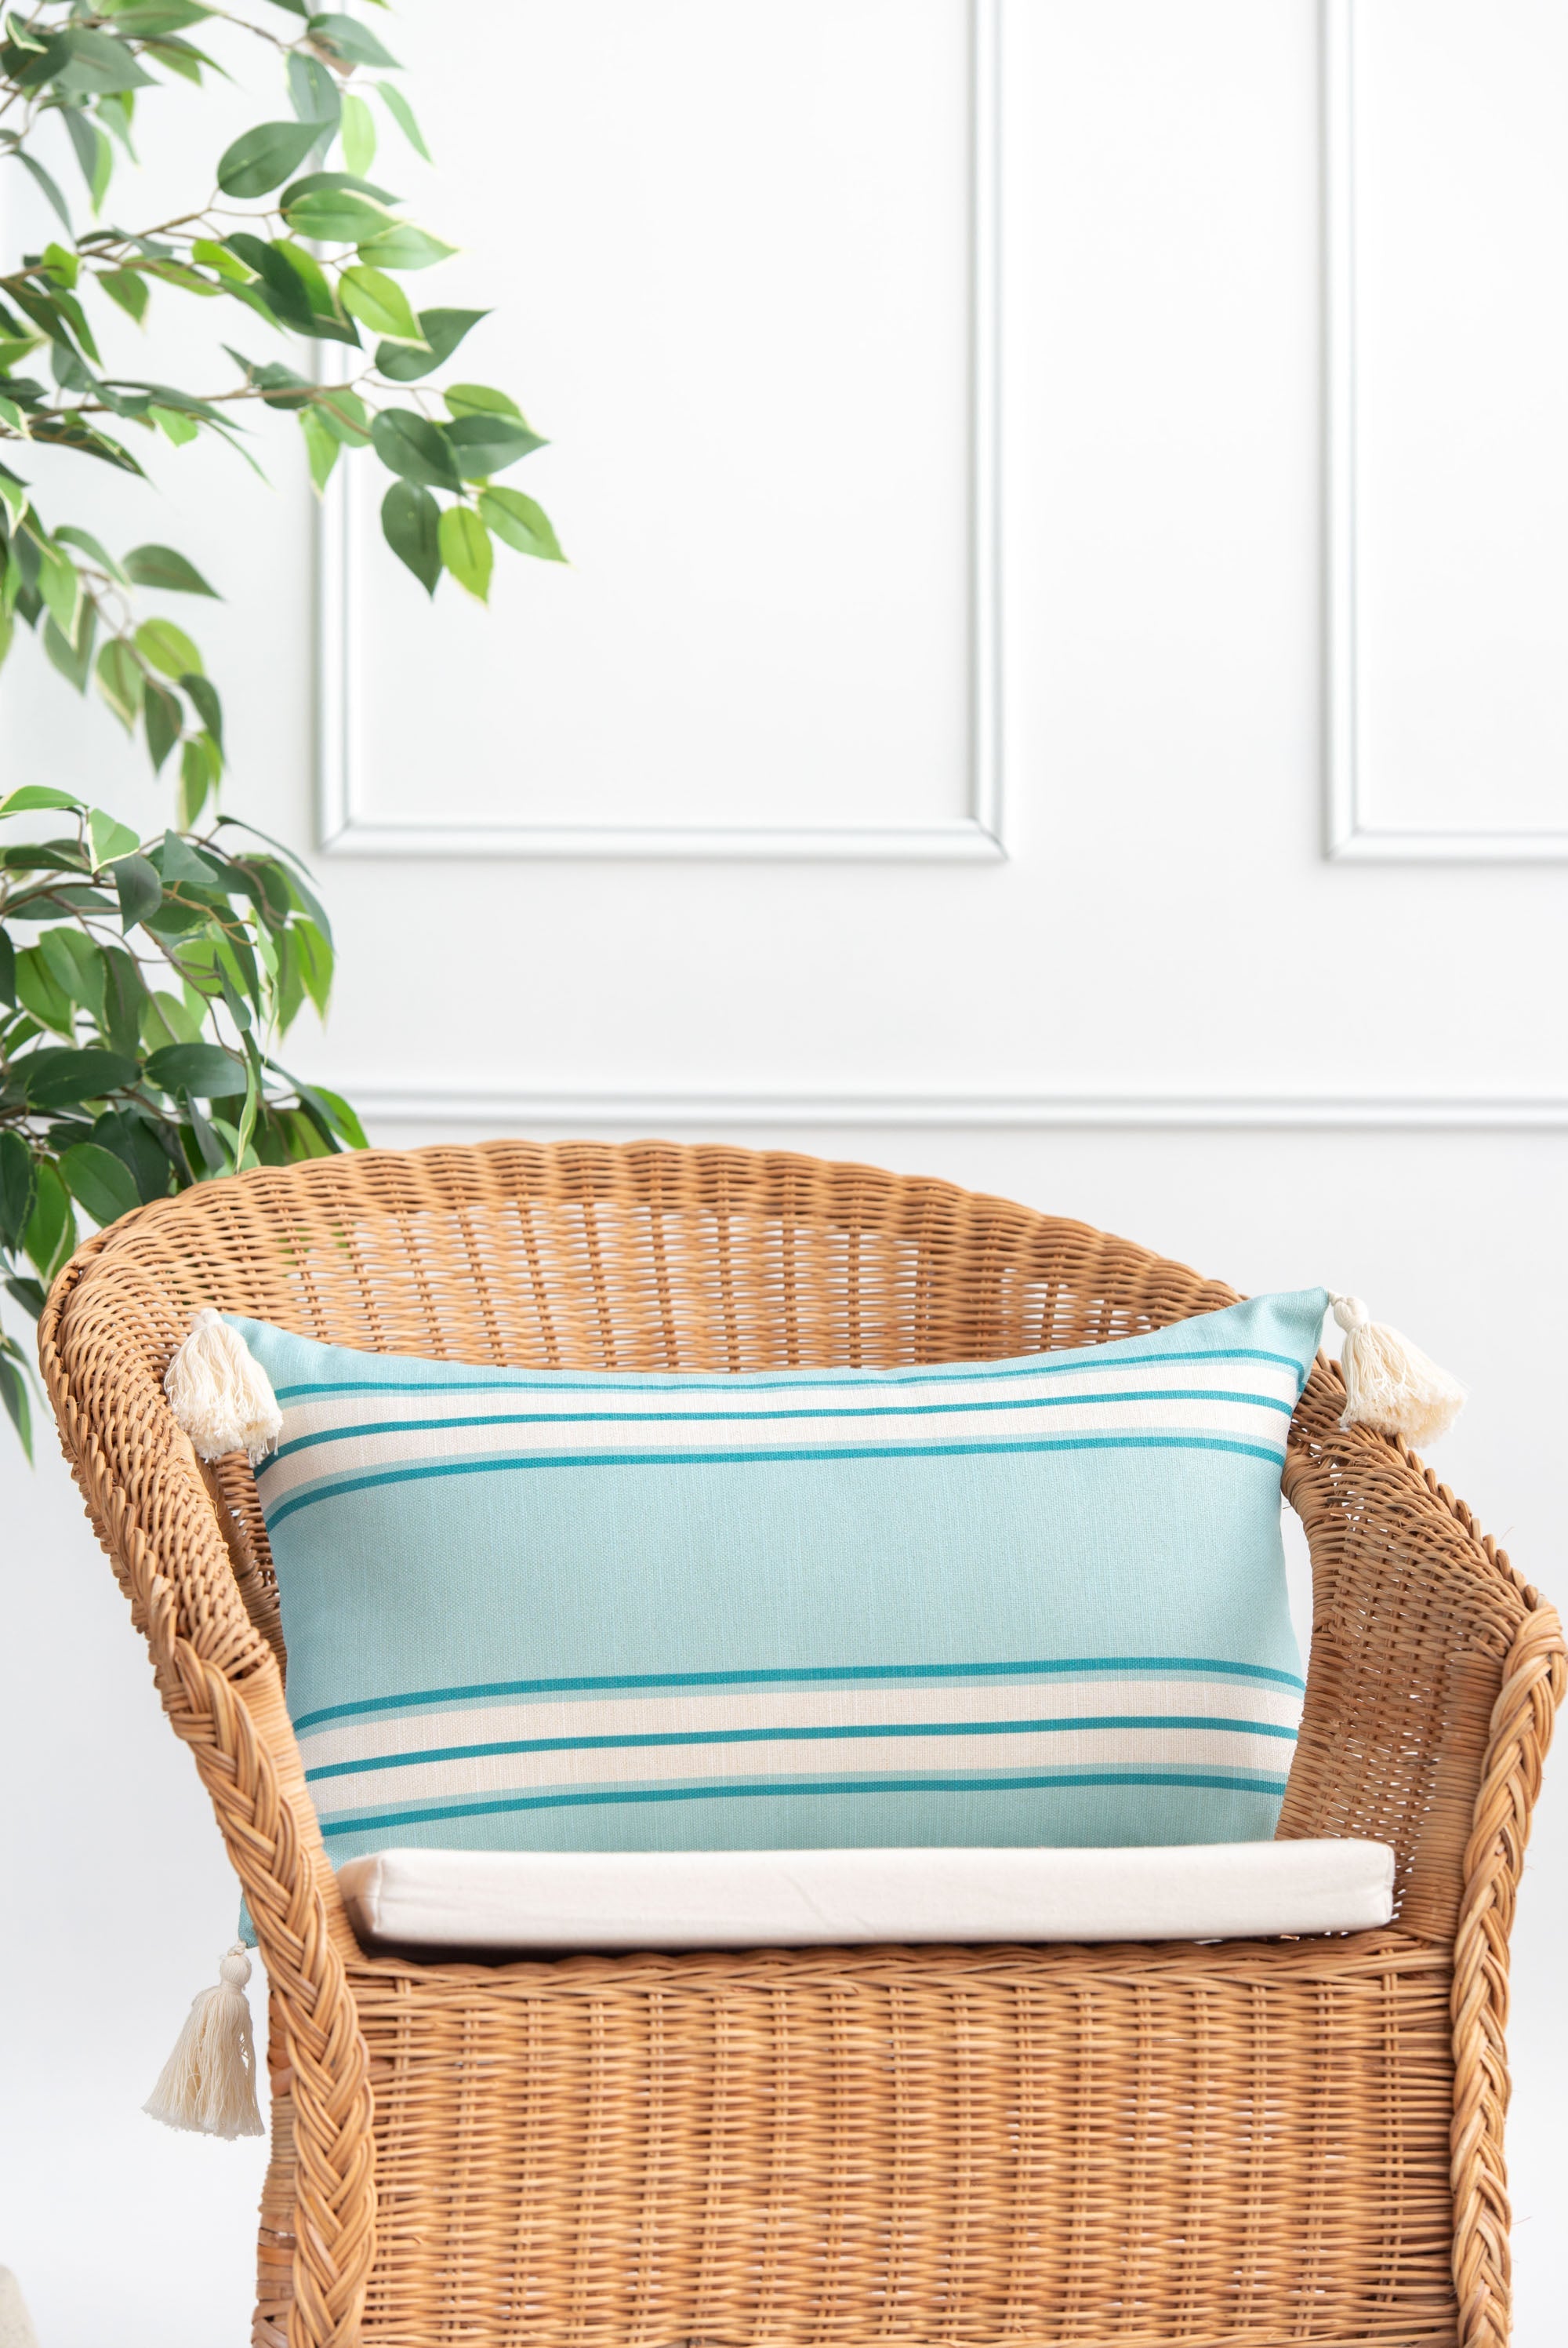 Coastal Indoor Outdoor Lumbar Pillow Cover, Aviv, Stripe Tassel, Aqua Turquoise, 12"x20"-1